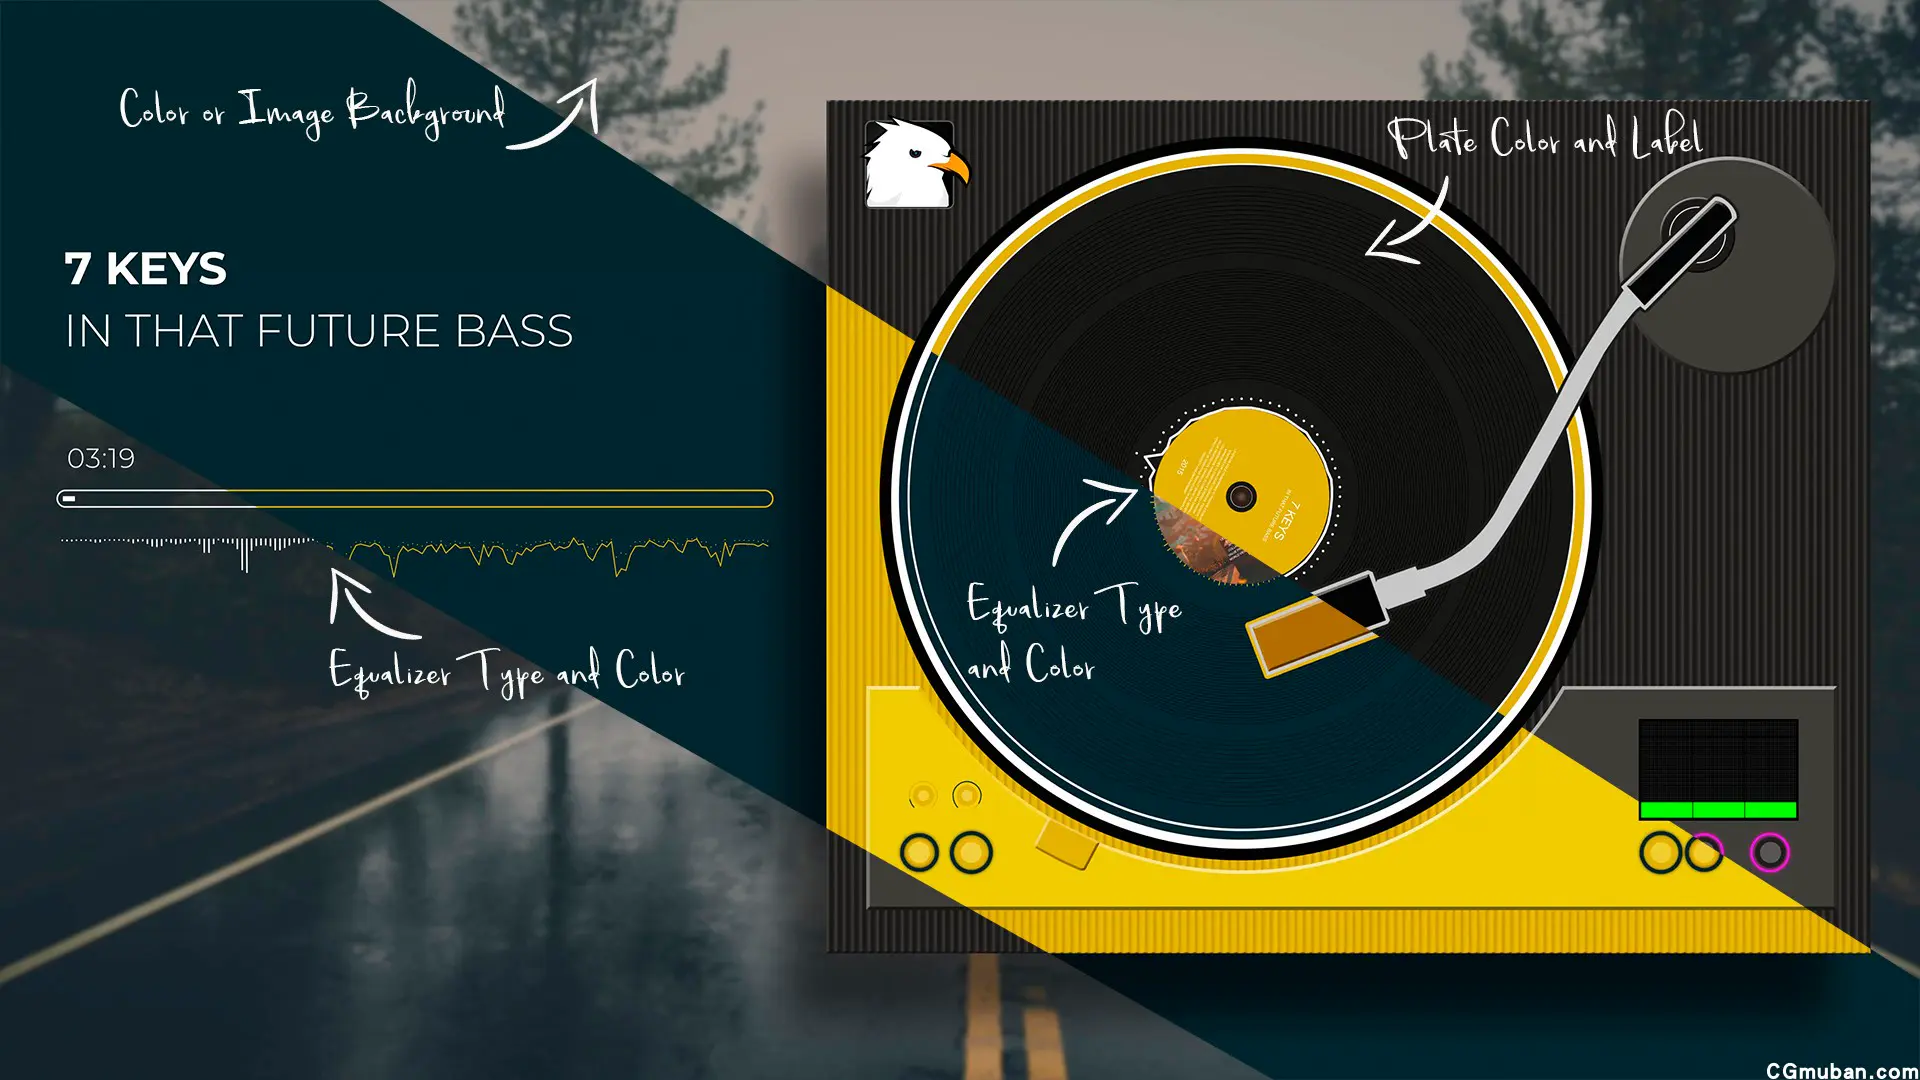 创意设计音乐专辑封面音频频谱可视化黑胶磁带播放器均衡器AE模板插图(6)